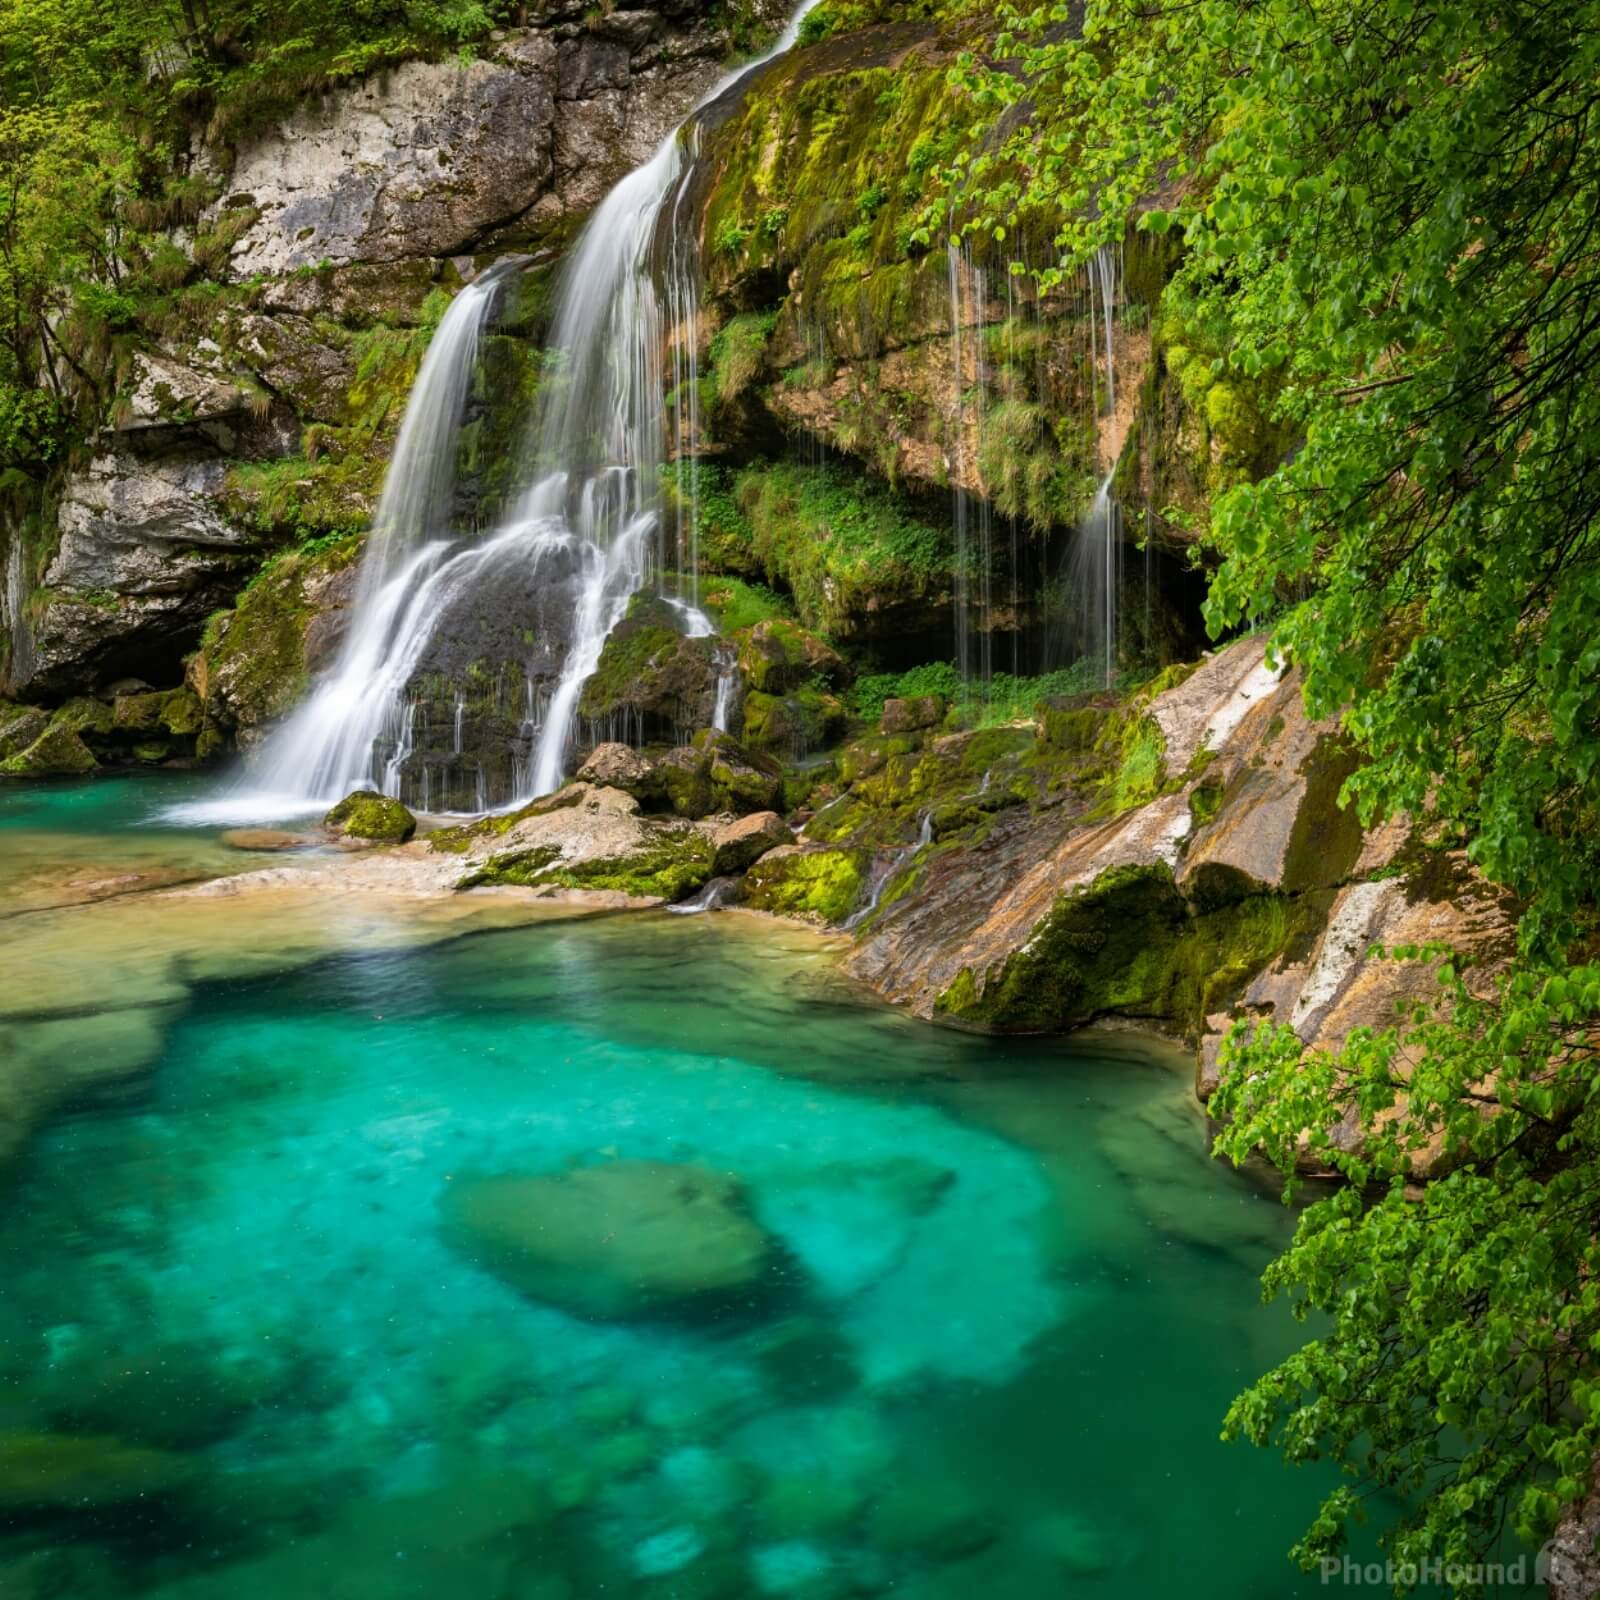 Image of Virje Waterfall by VOJTa Herout